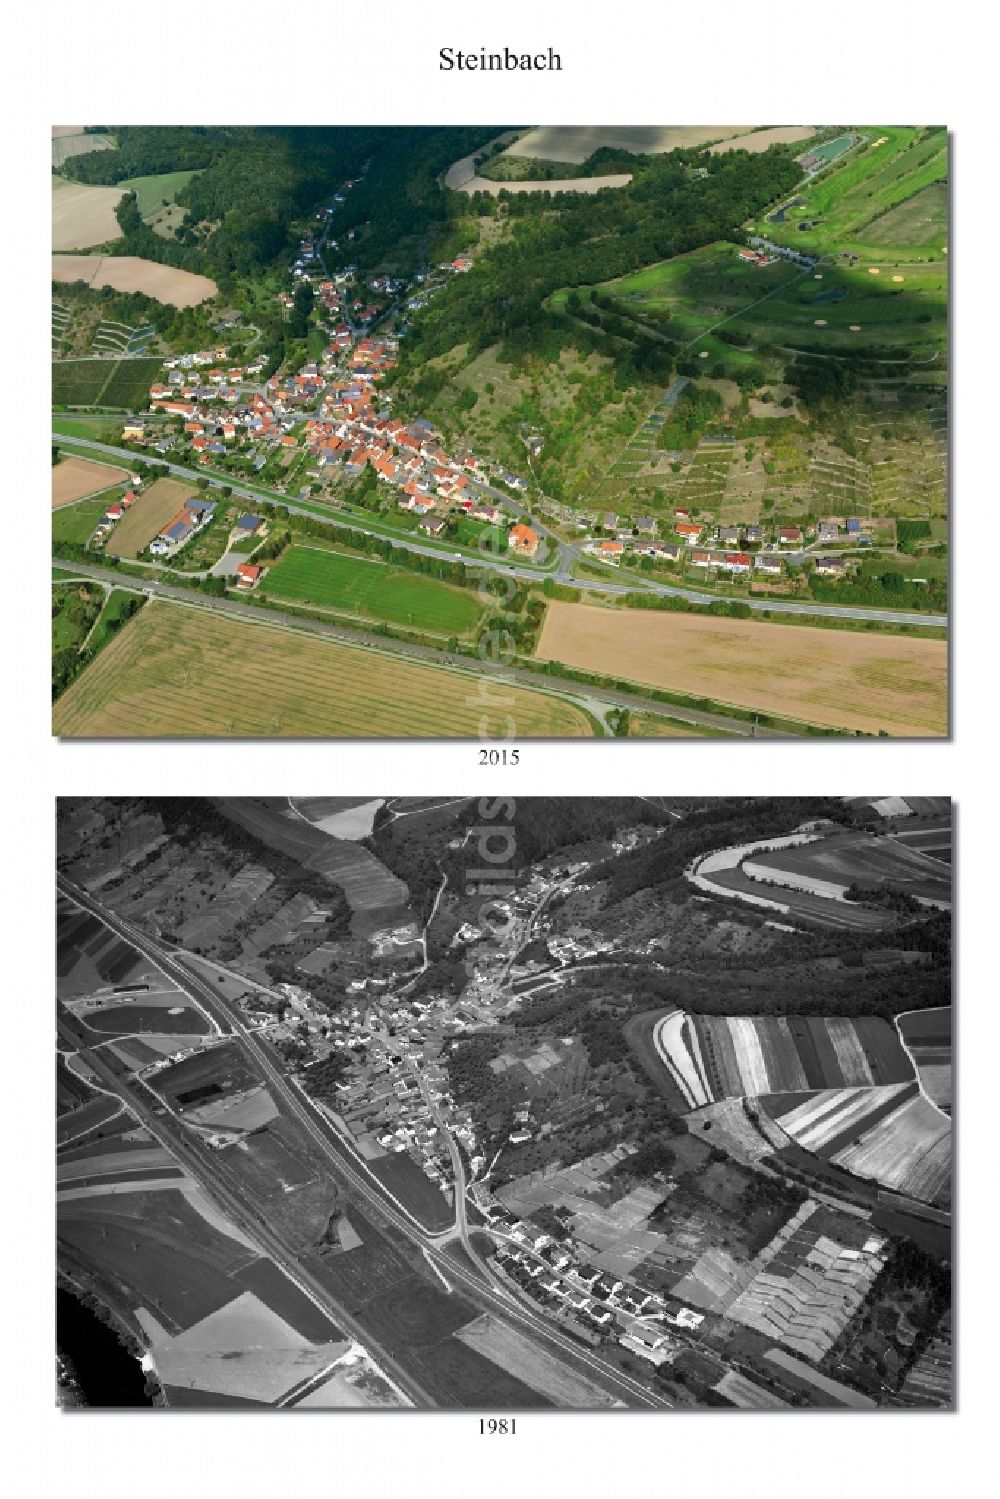 Steinbach von oben - 1981 und 2015 Wandel der Dorf - Ansicht von Steinbach im Landkreis Haßberge im Bundesland Bayern